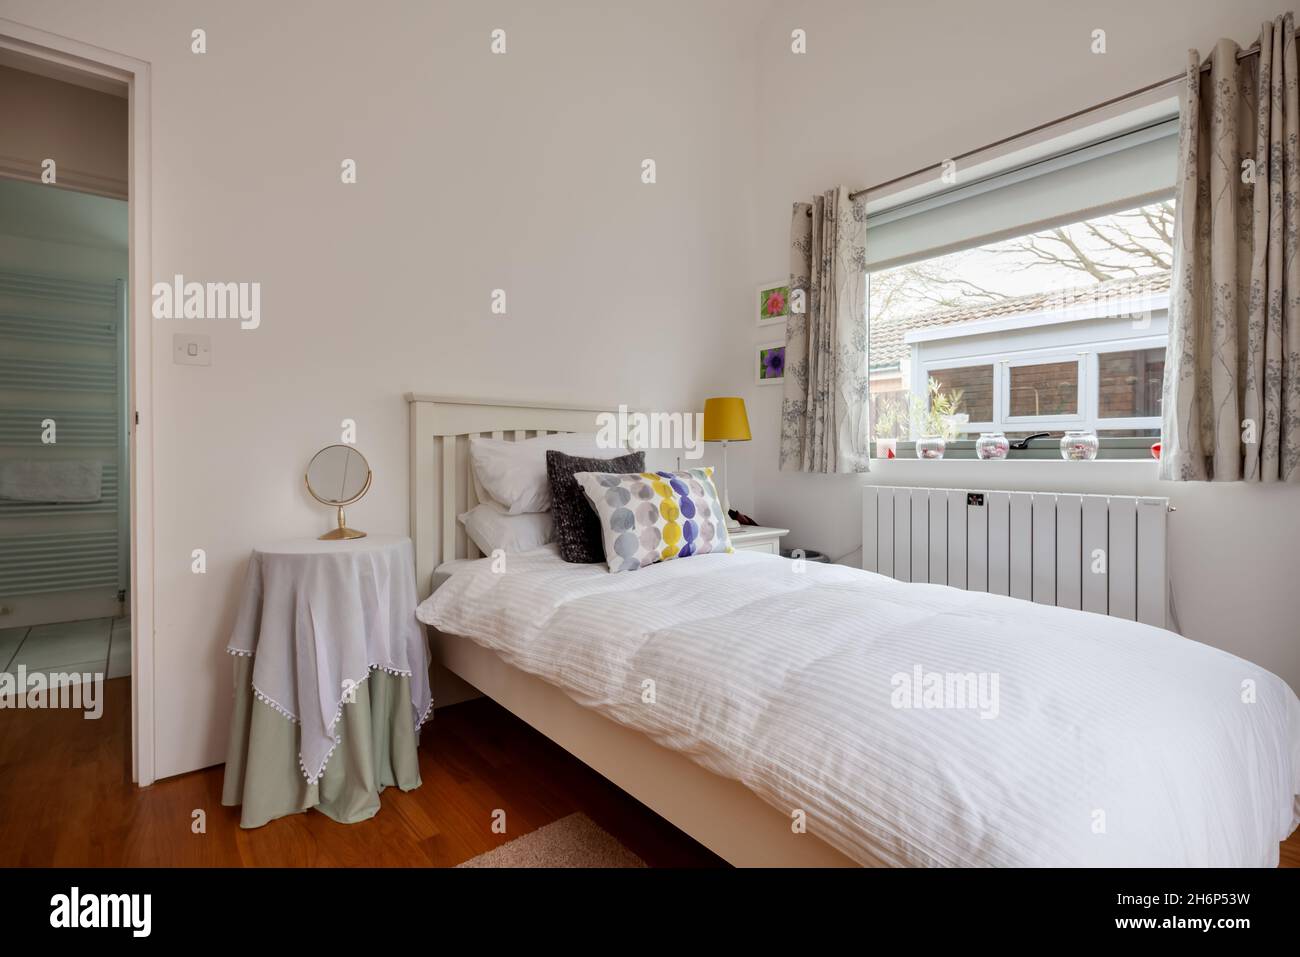 Clare, Inghilterra - 9 marzo 2020: Camera da letto residenziale con letto singolo e bagno in background Foto Stock